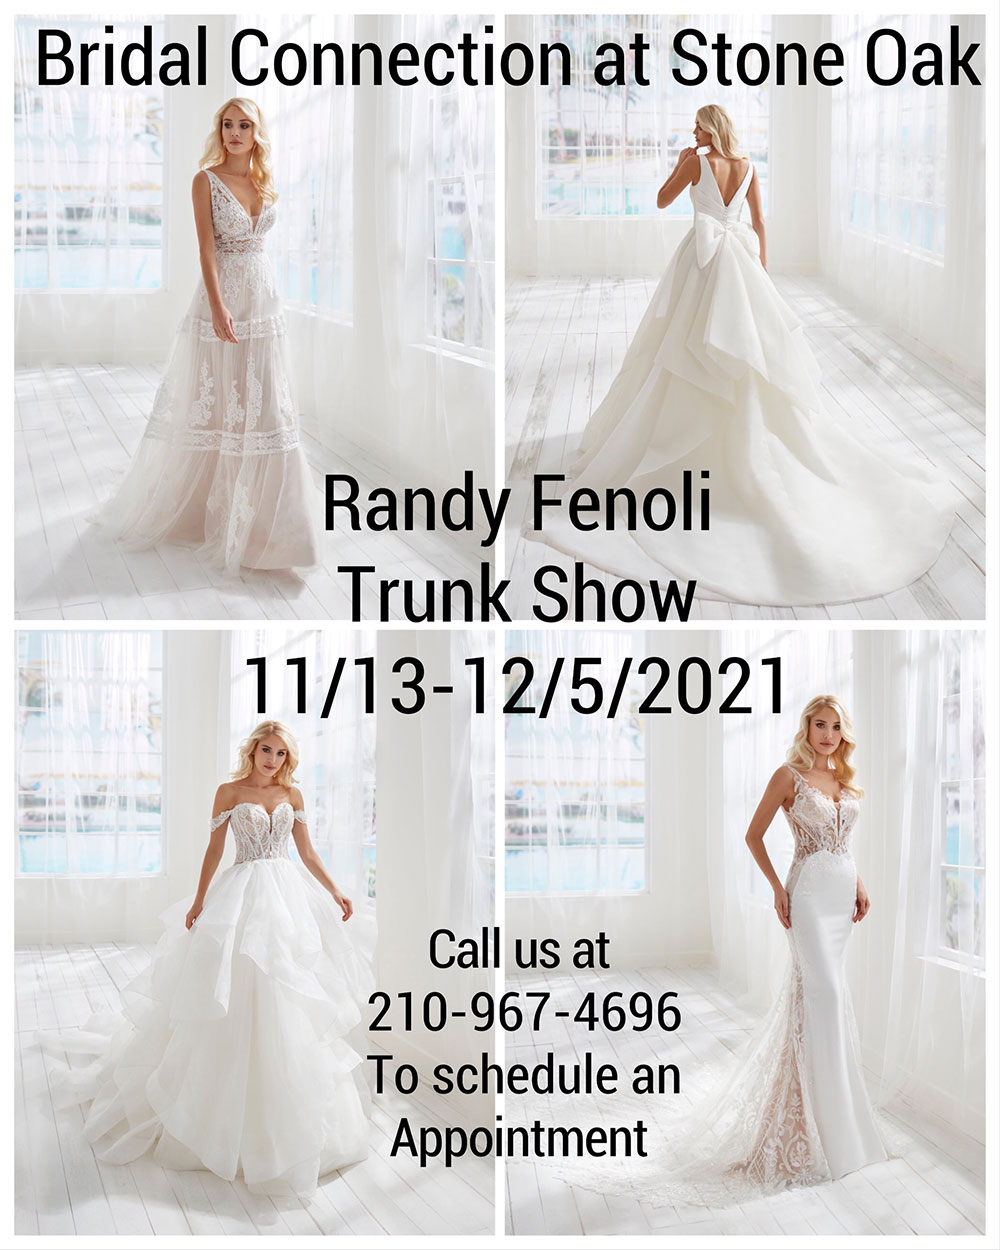 Randy Fenoli Trunk Show